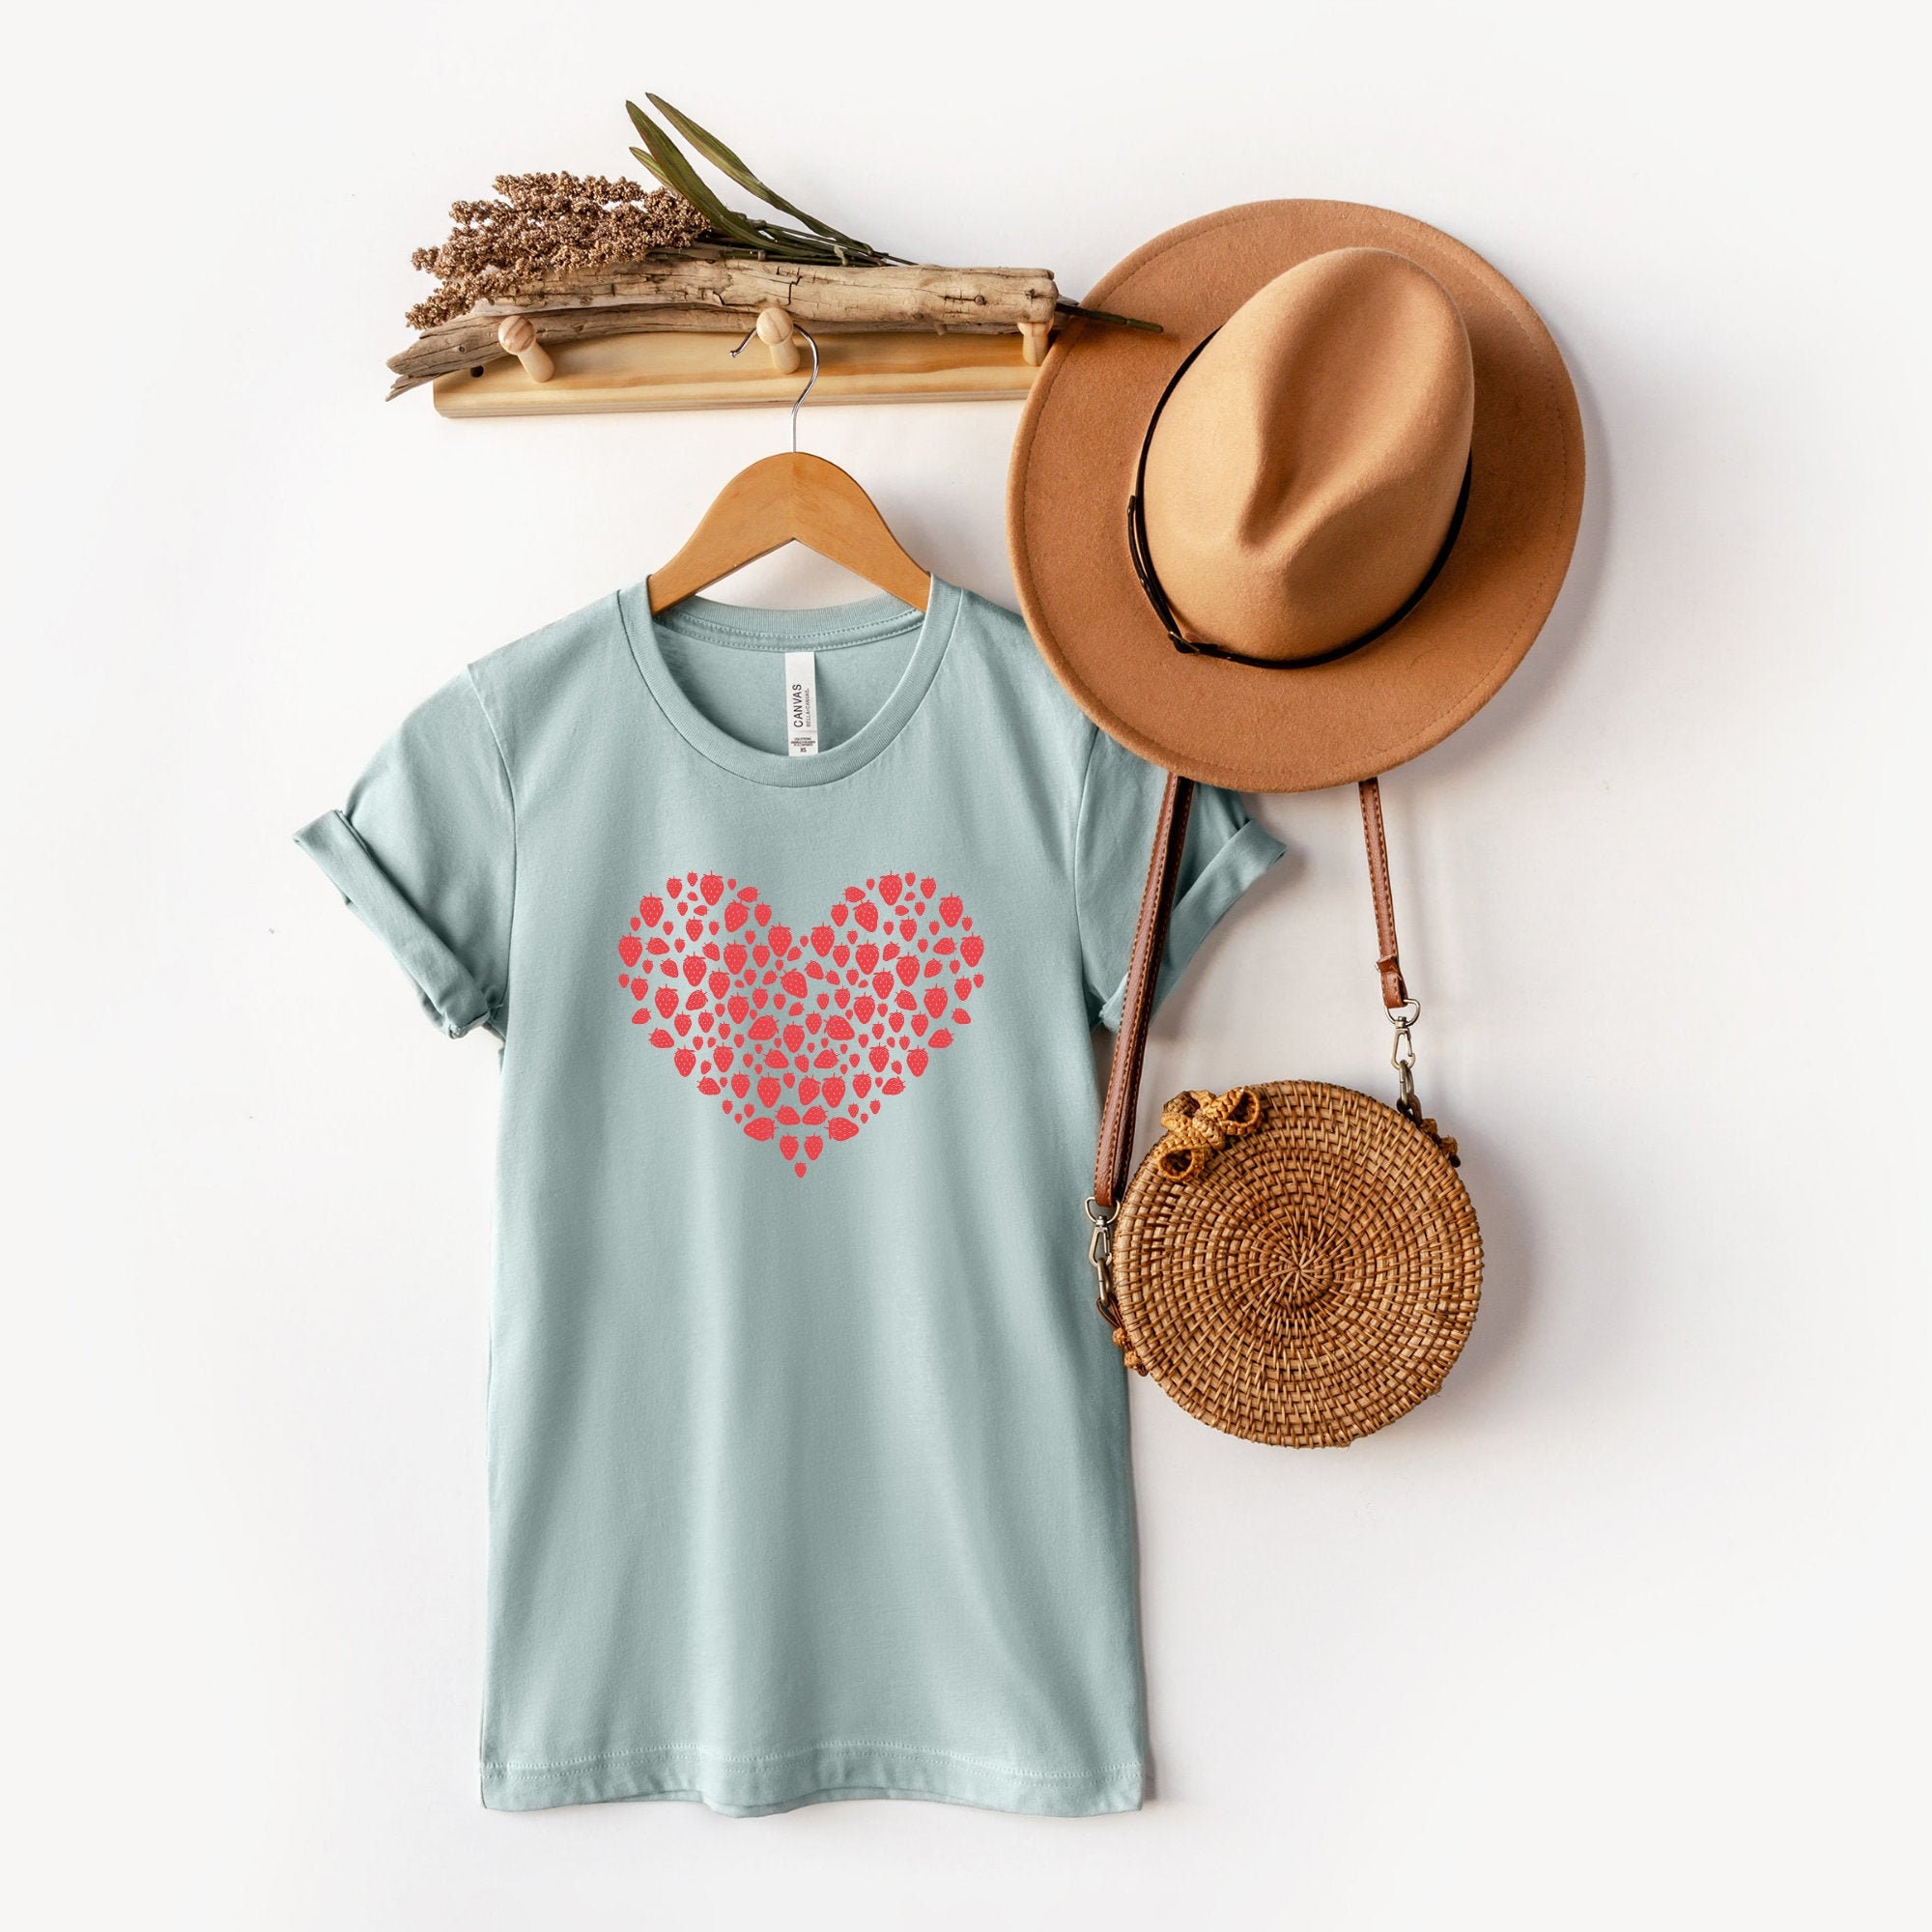 Strawberry Shirt Cute Strawberry Cottagecore Clothing | Etsy